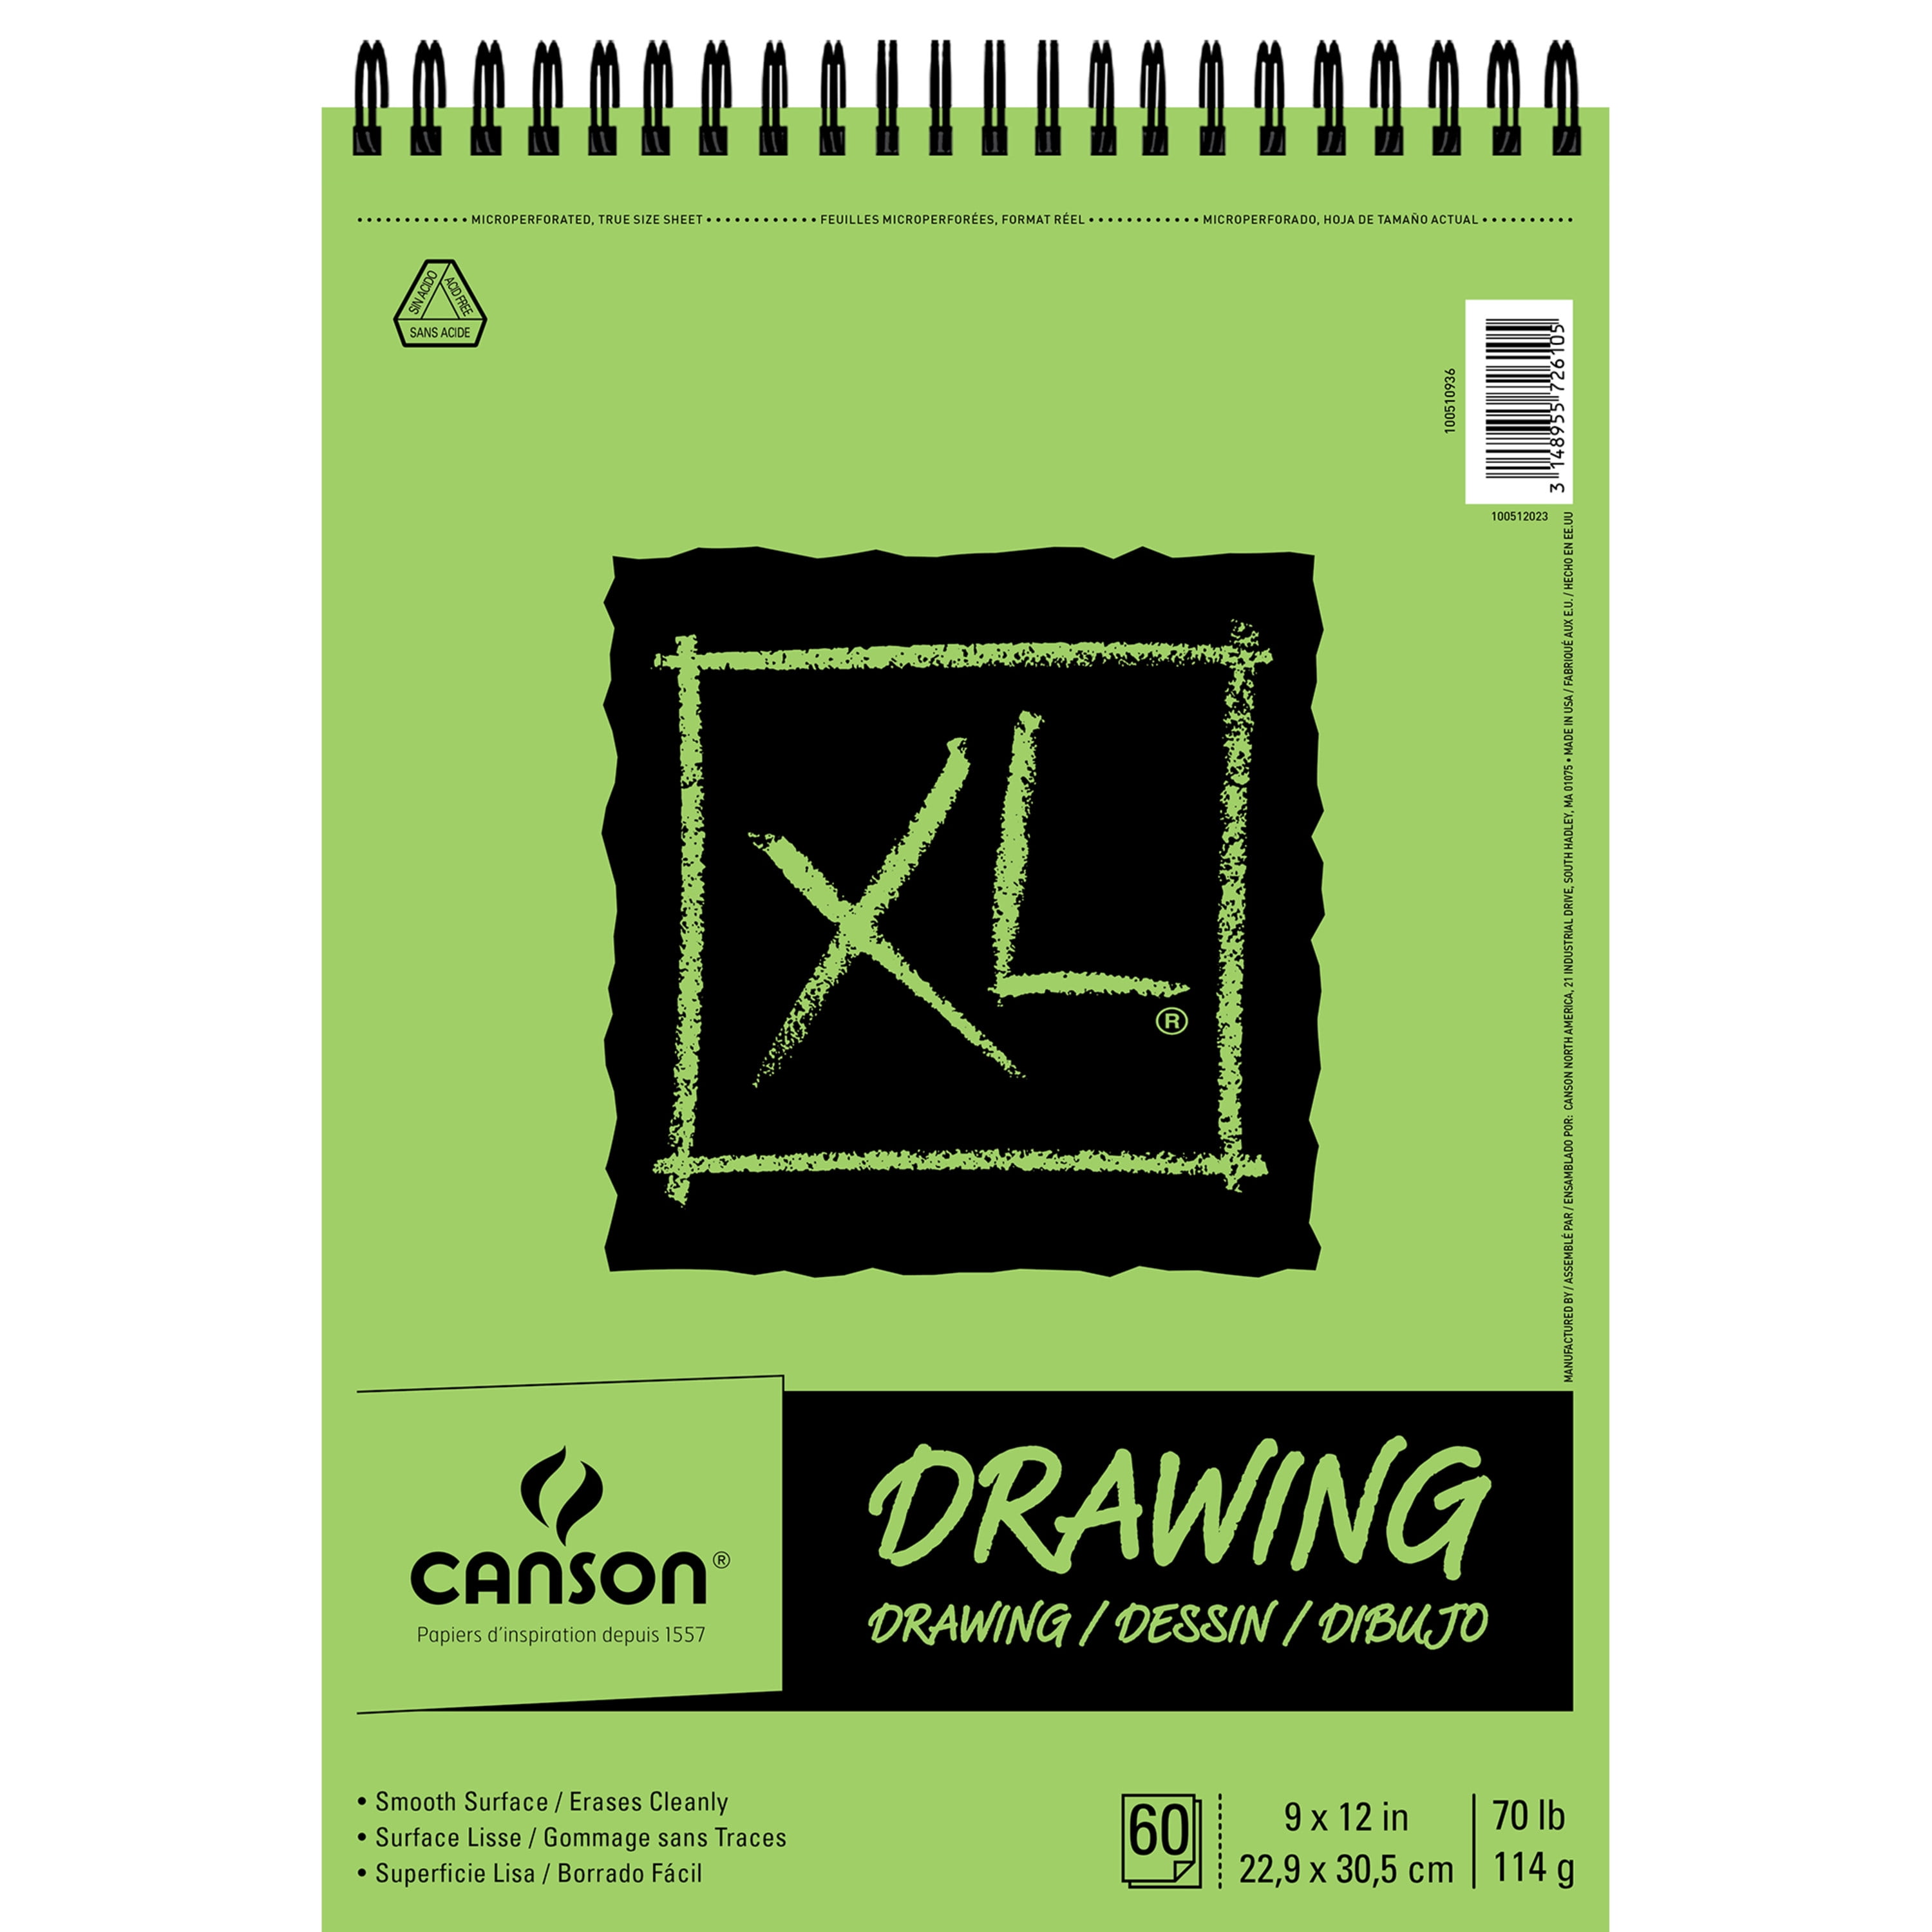 XL Mix Media Sketchbook 9x12